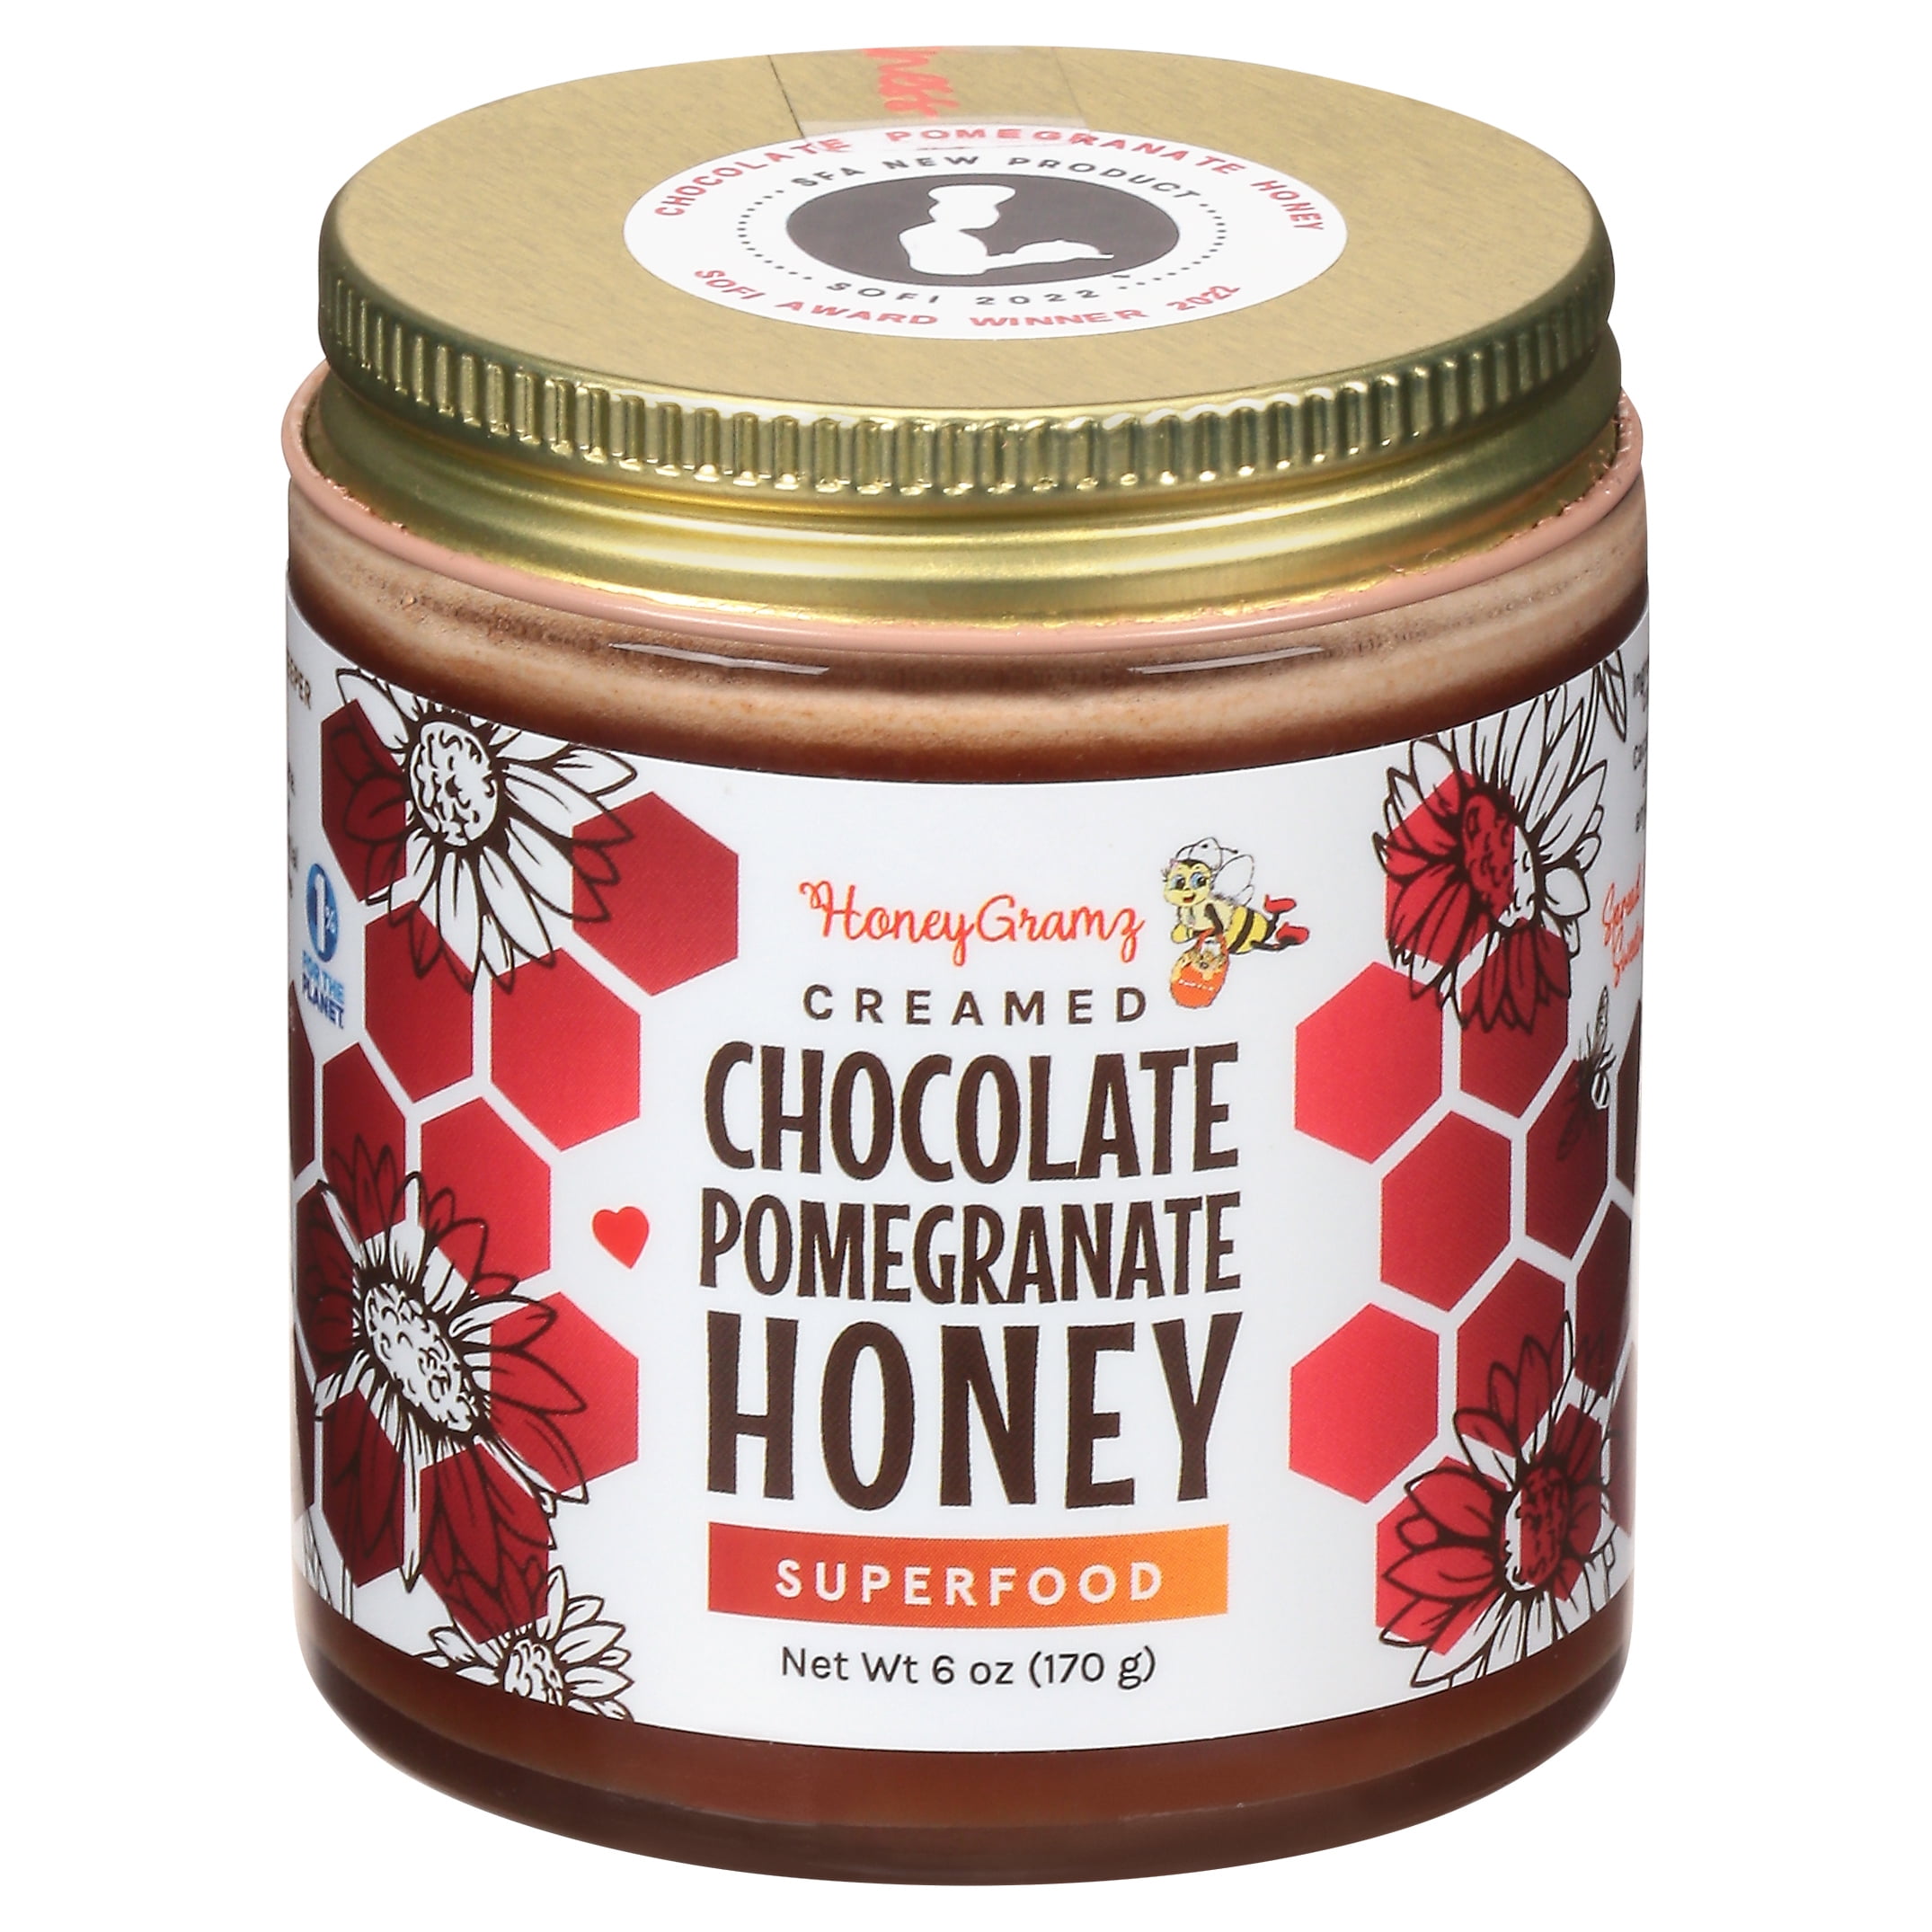 You're Wonderful Honey – HoneyGramz